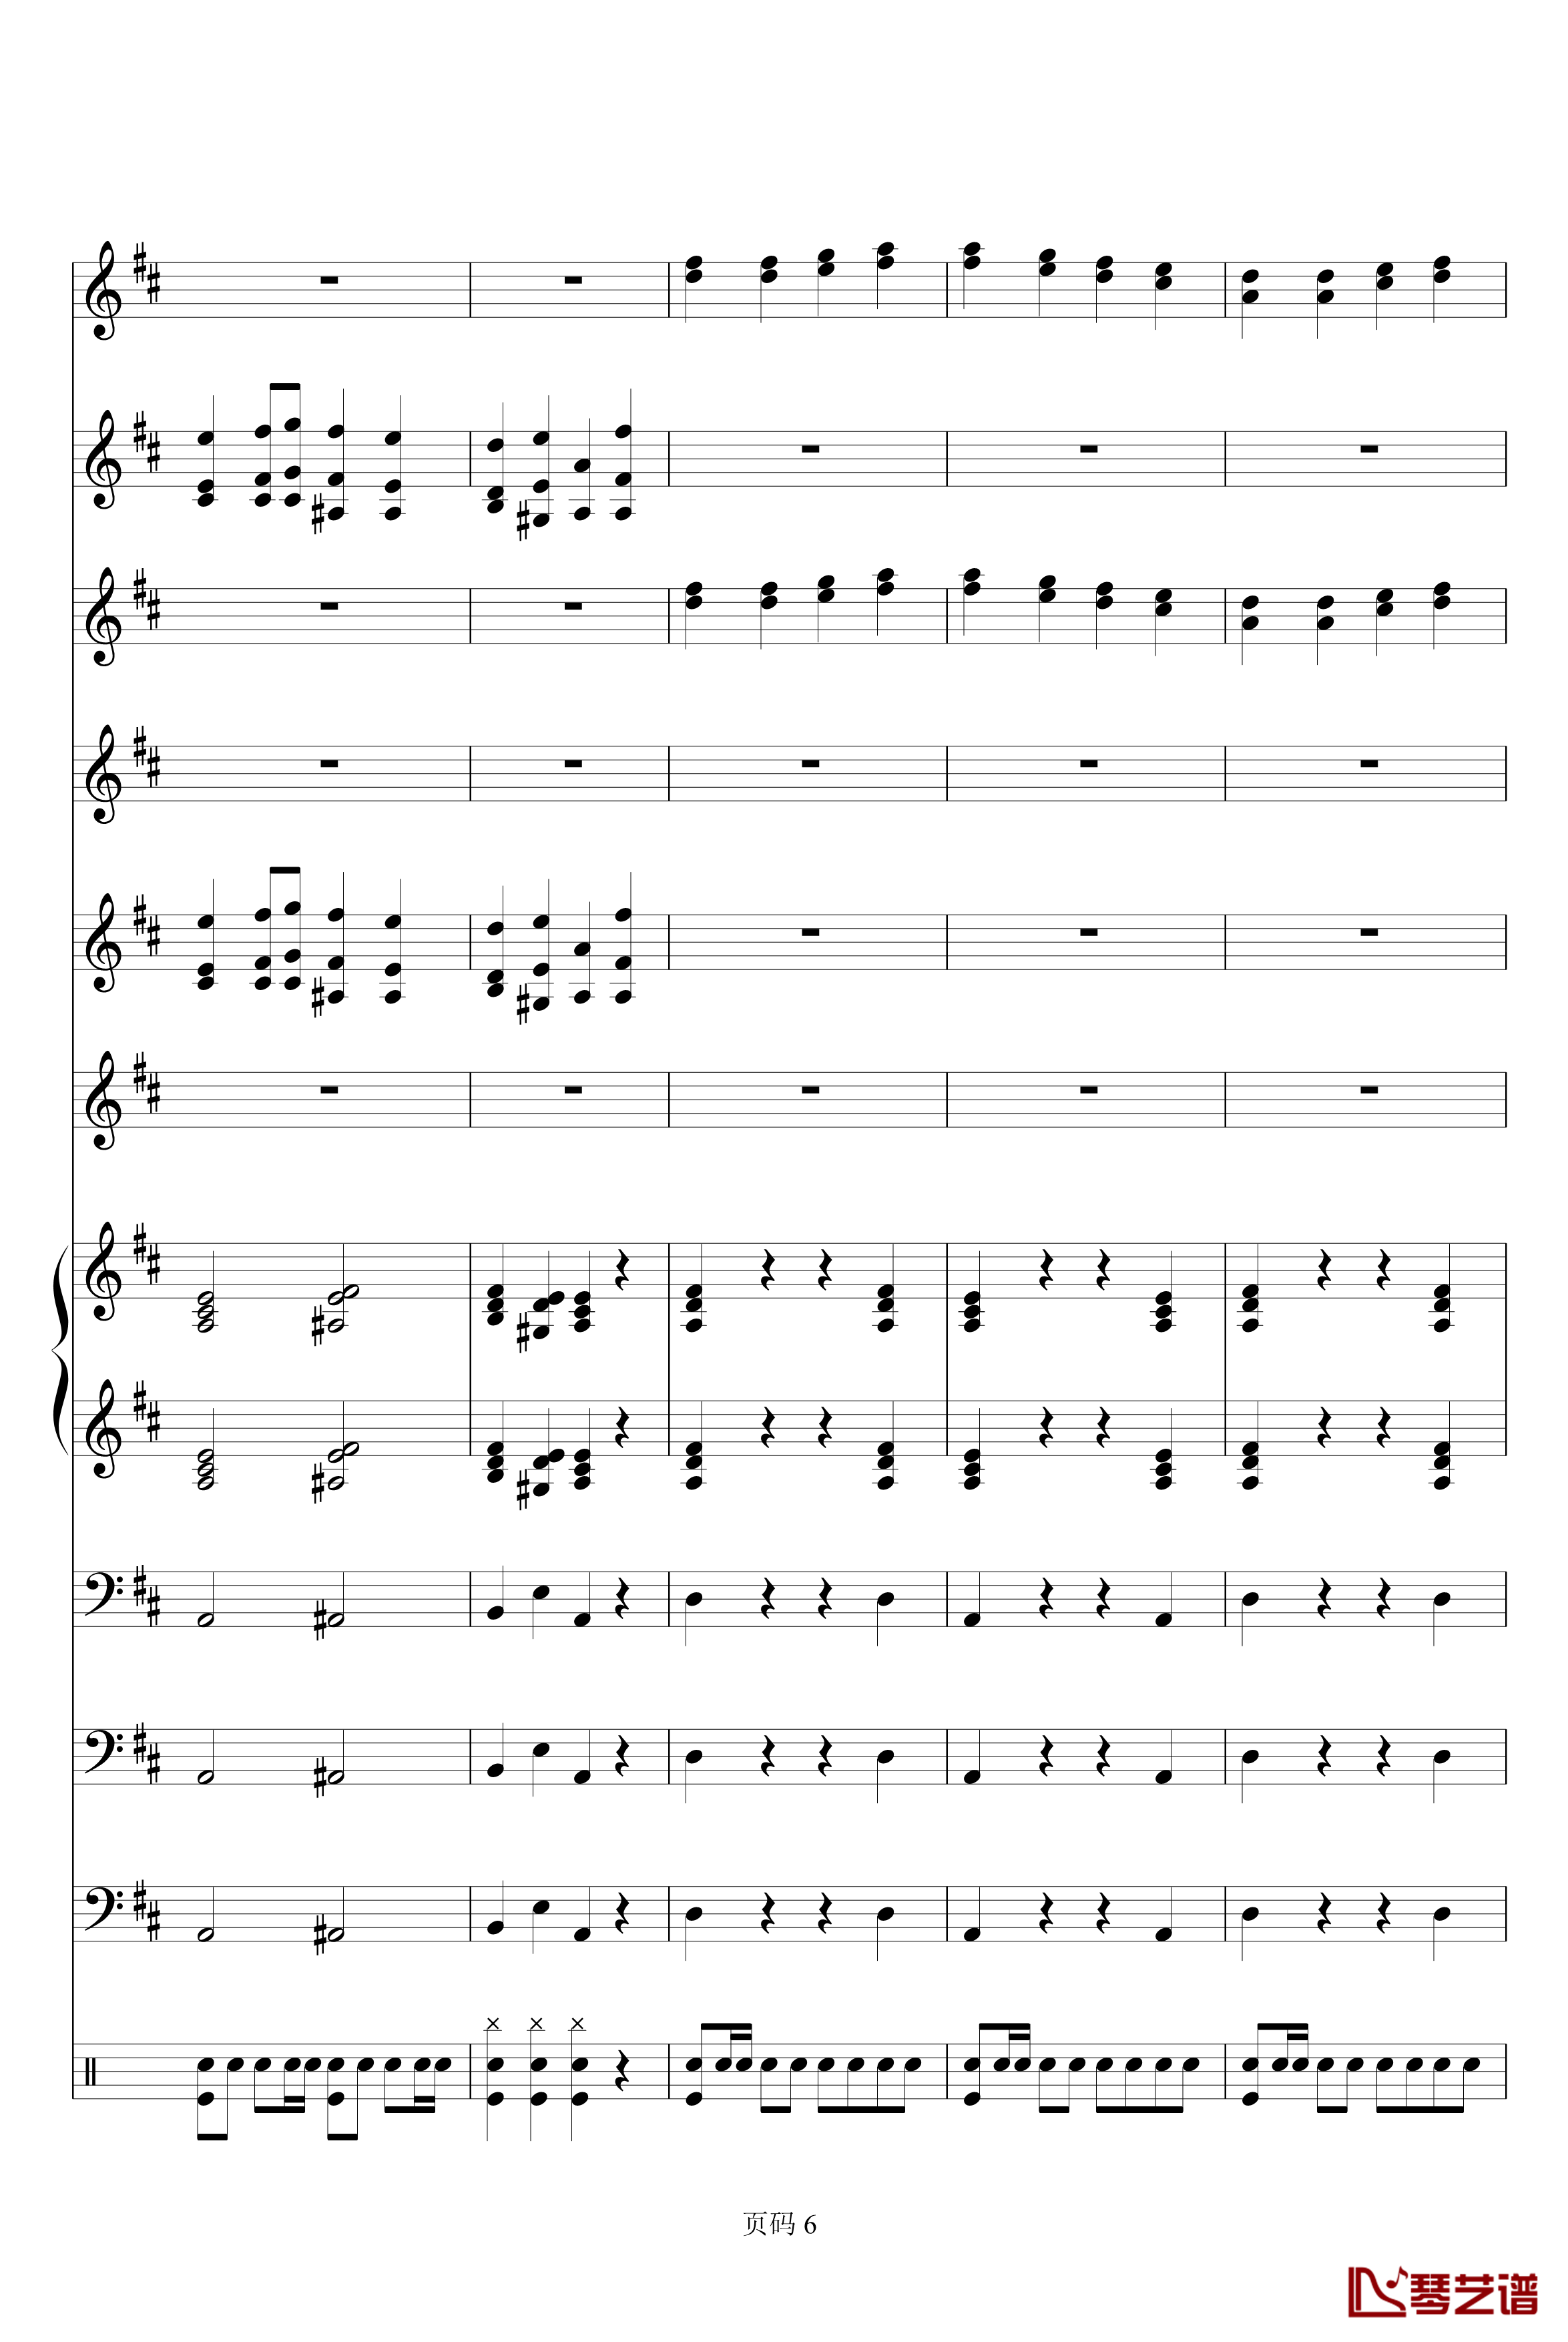 欢乐颂电子琴合奏钢琴谱-贝多芬-beethoven6